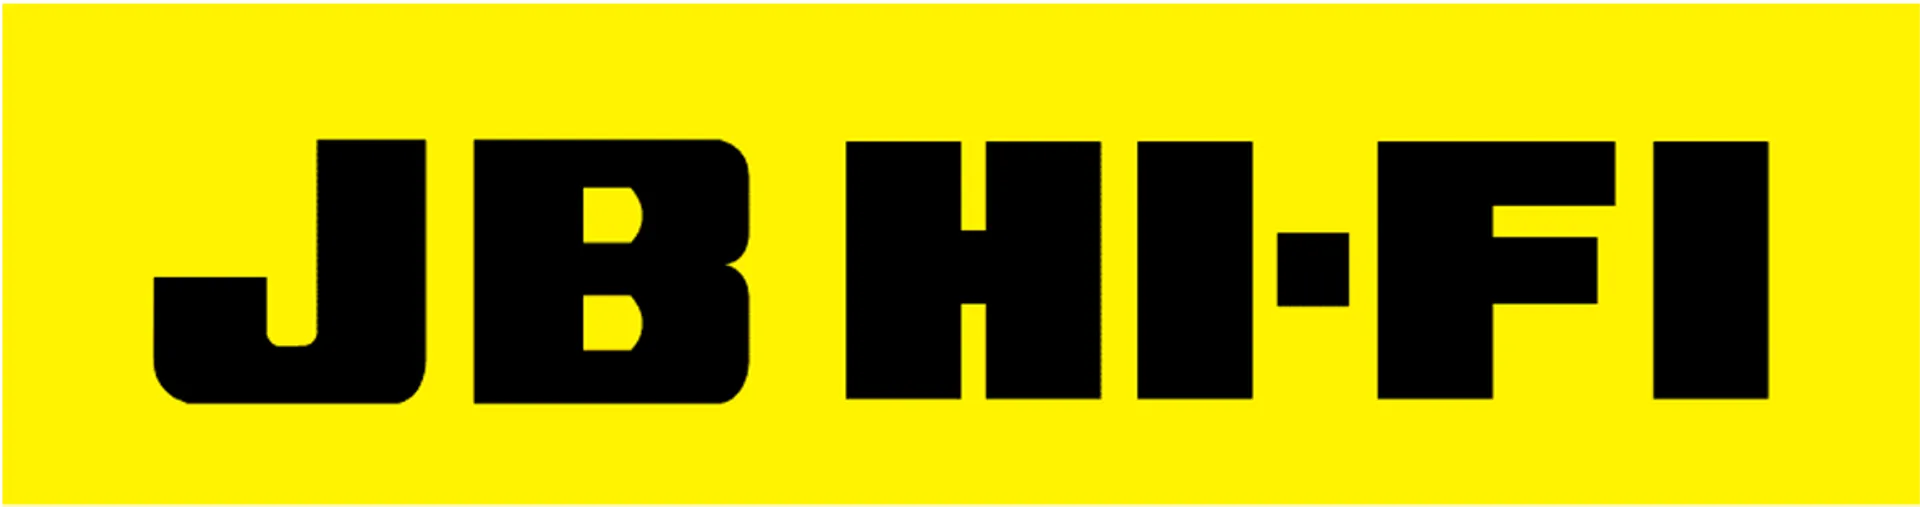 JB Hi-Fi logo